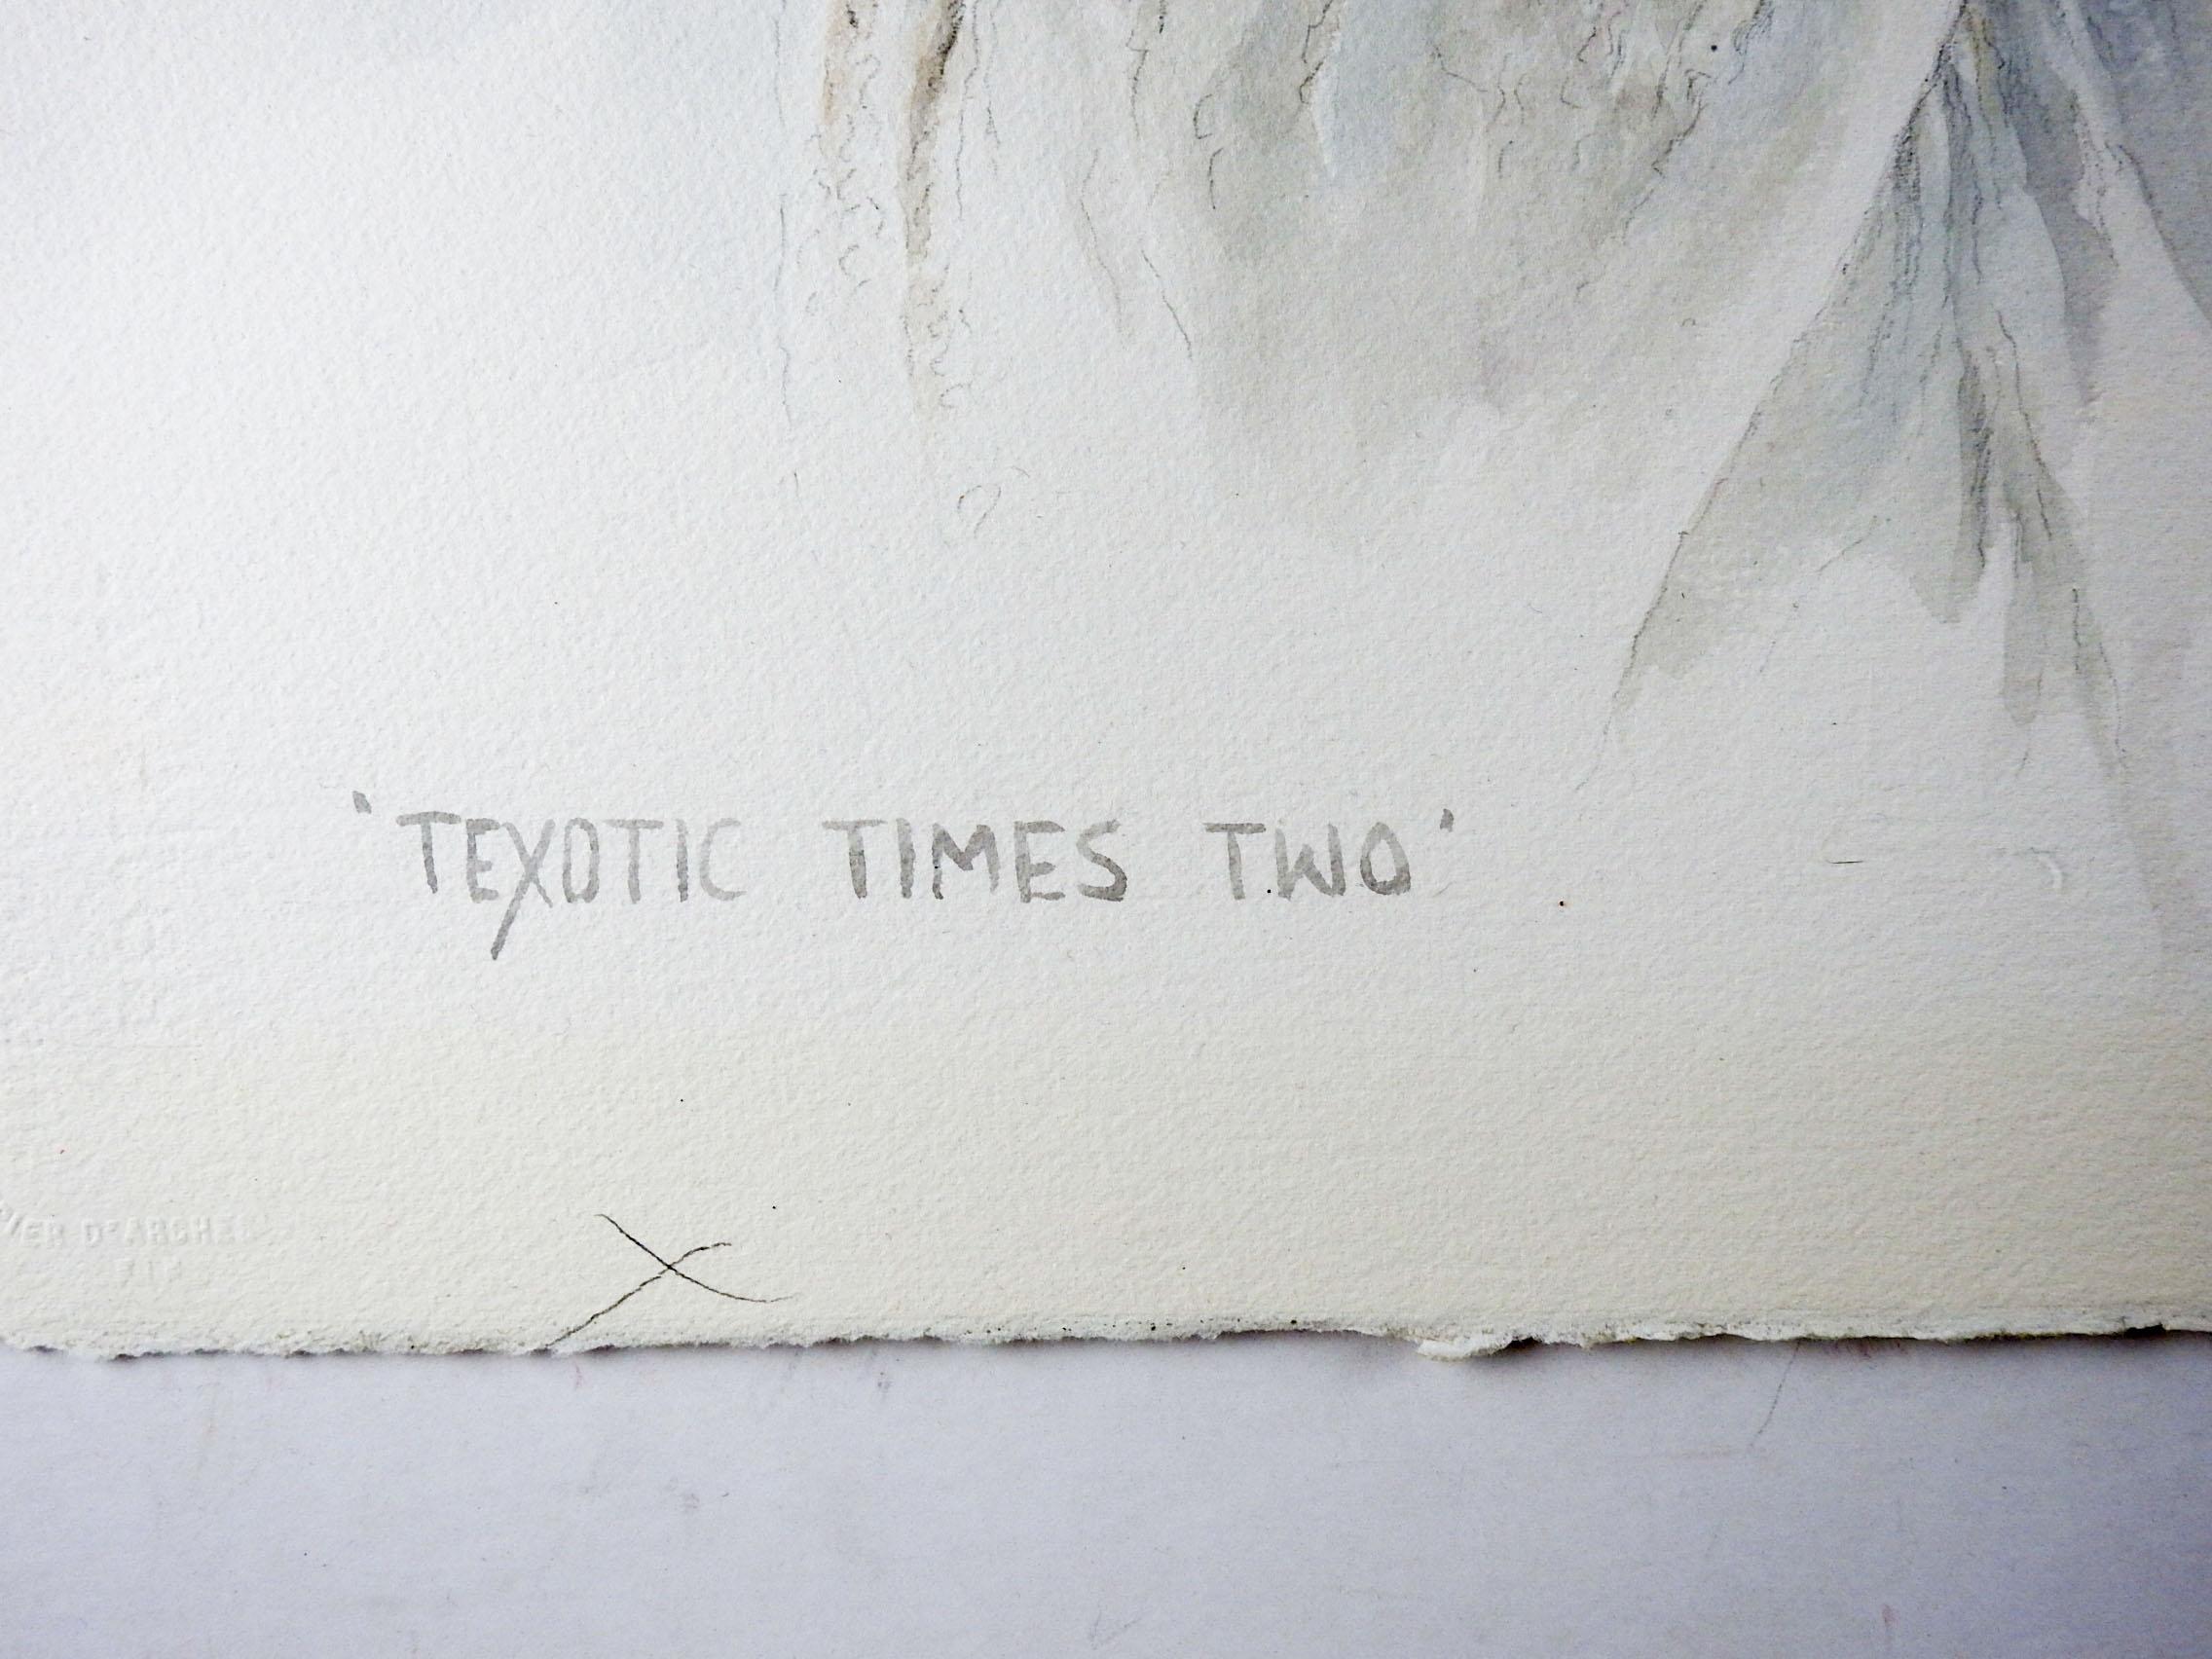 Aquarell auf Papier von J. Royal Telford (1932-2003) Texas.  Betitelt Texotic Times Two, datiert 1989 und am unteren Rand signiert.  Das Gemälde zeigt ein Paar Whitetail-Böcke.  Ungerahmt.